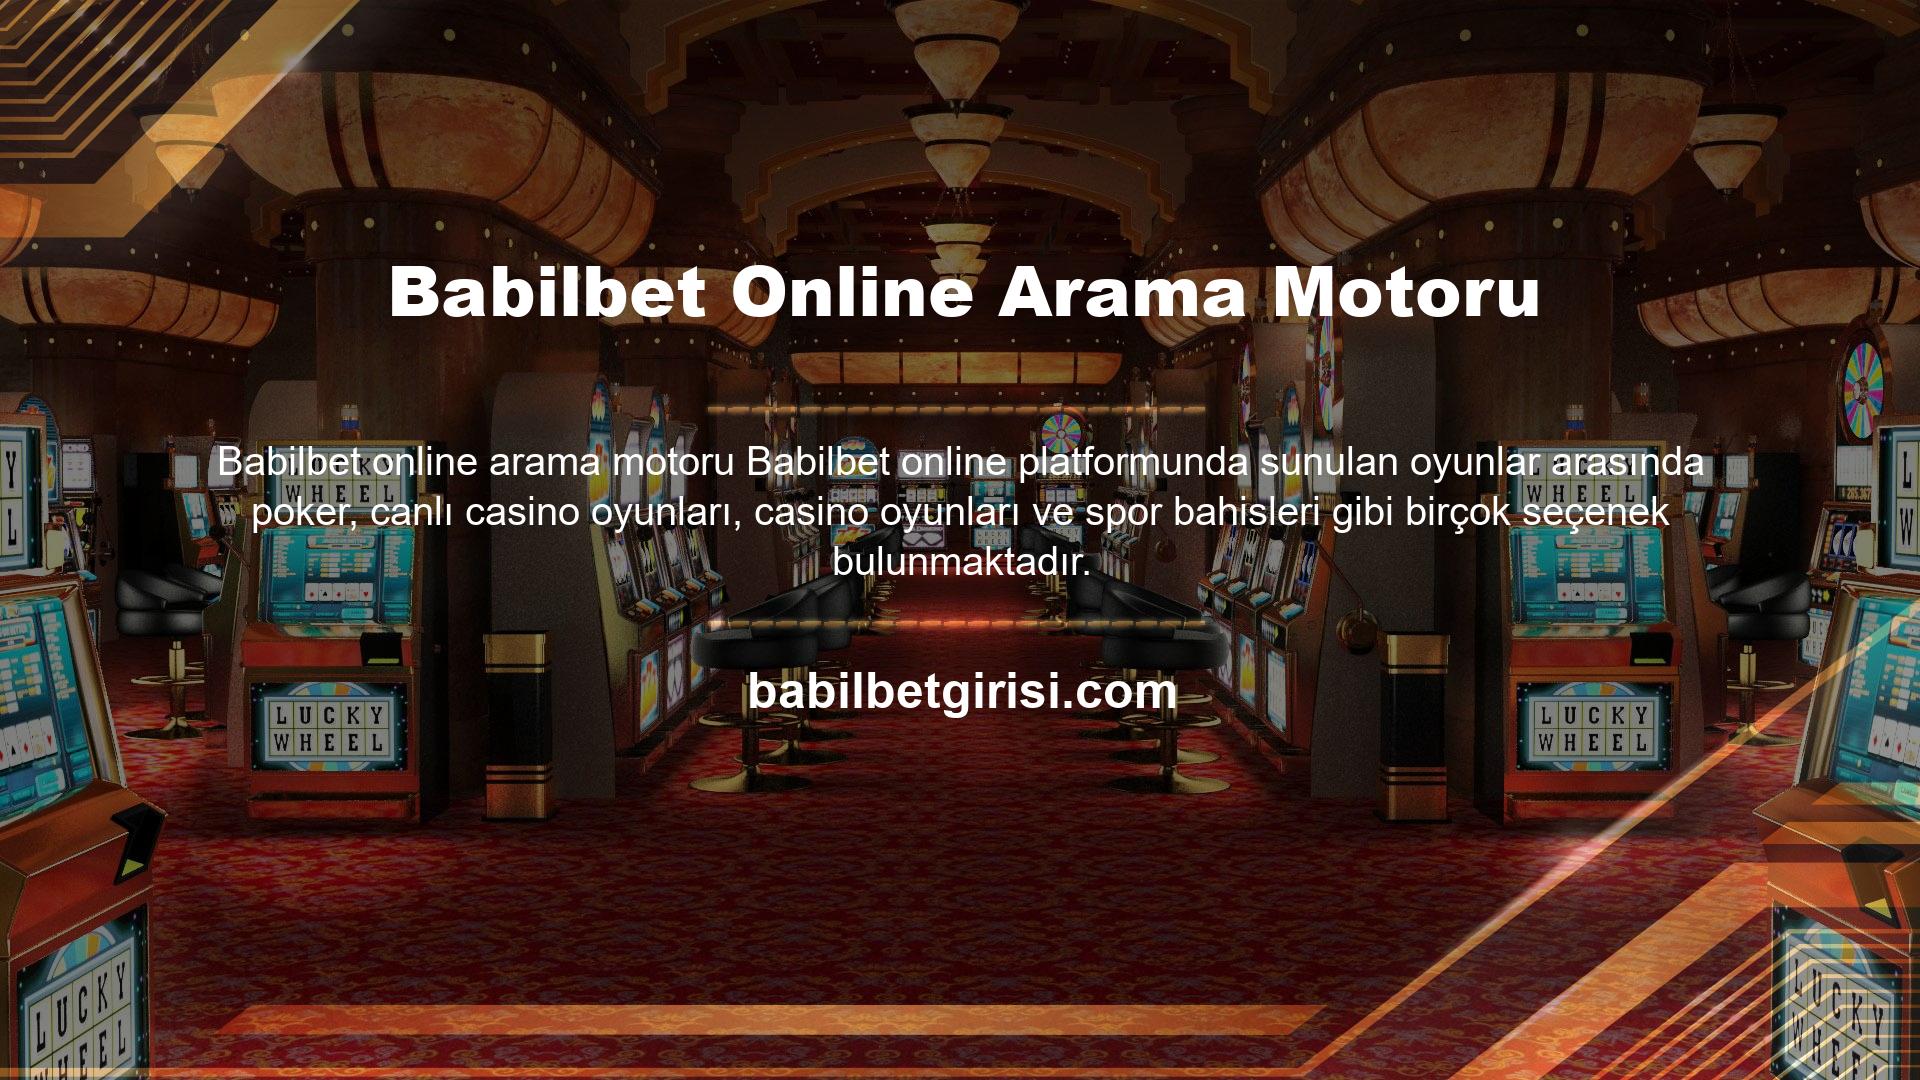 Casino siteleri, çevrimiçi platformlardaki en popüler ortamlardan biridir